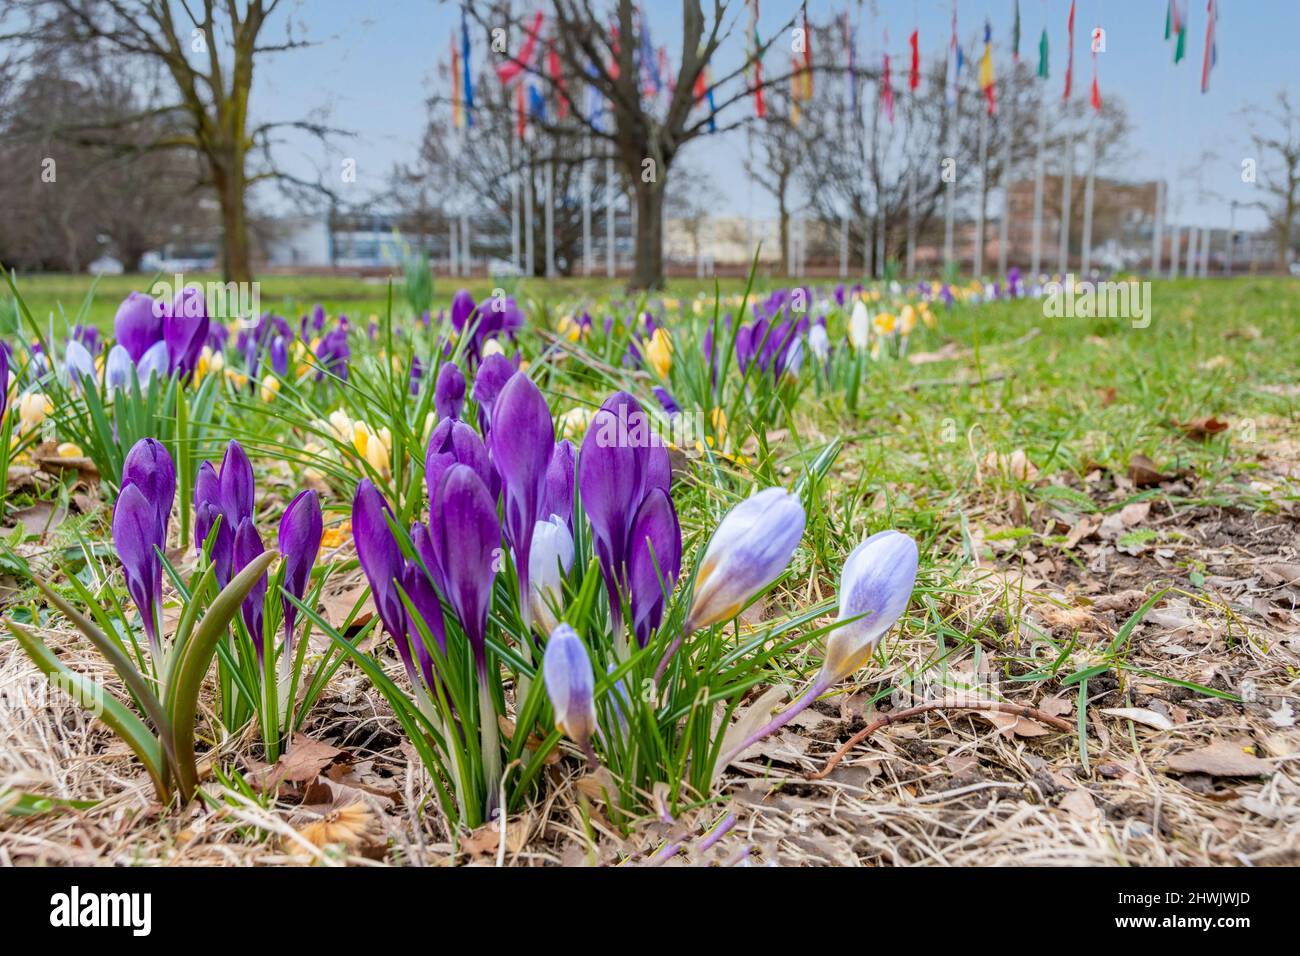 Der Europaplatz in Braunschweig gestaltet sich im Frühling mit den bunten Krokussen besonders schön Stock Photo